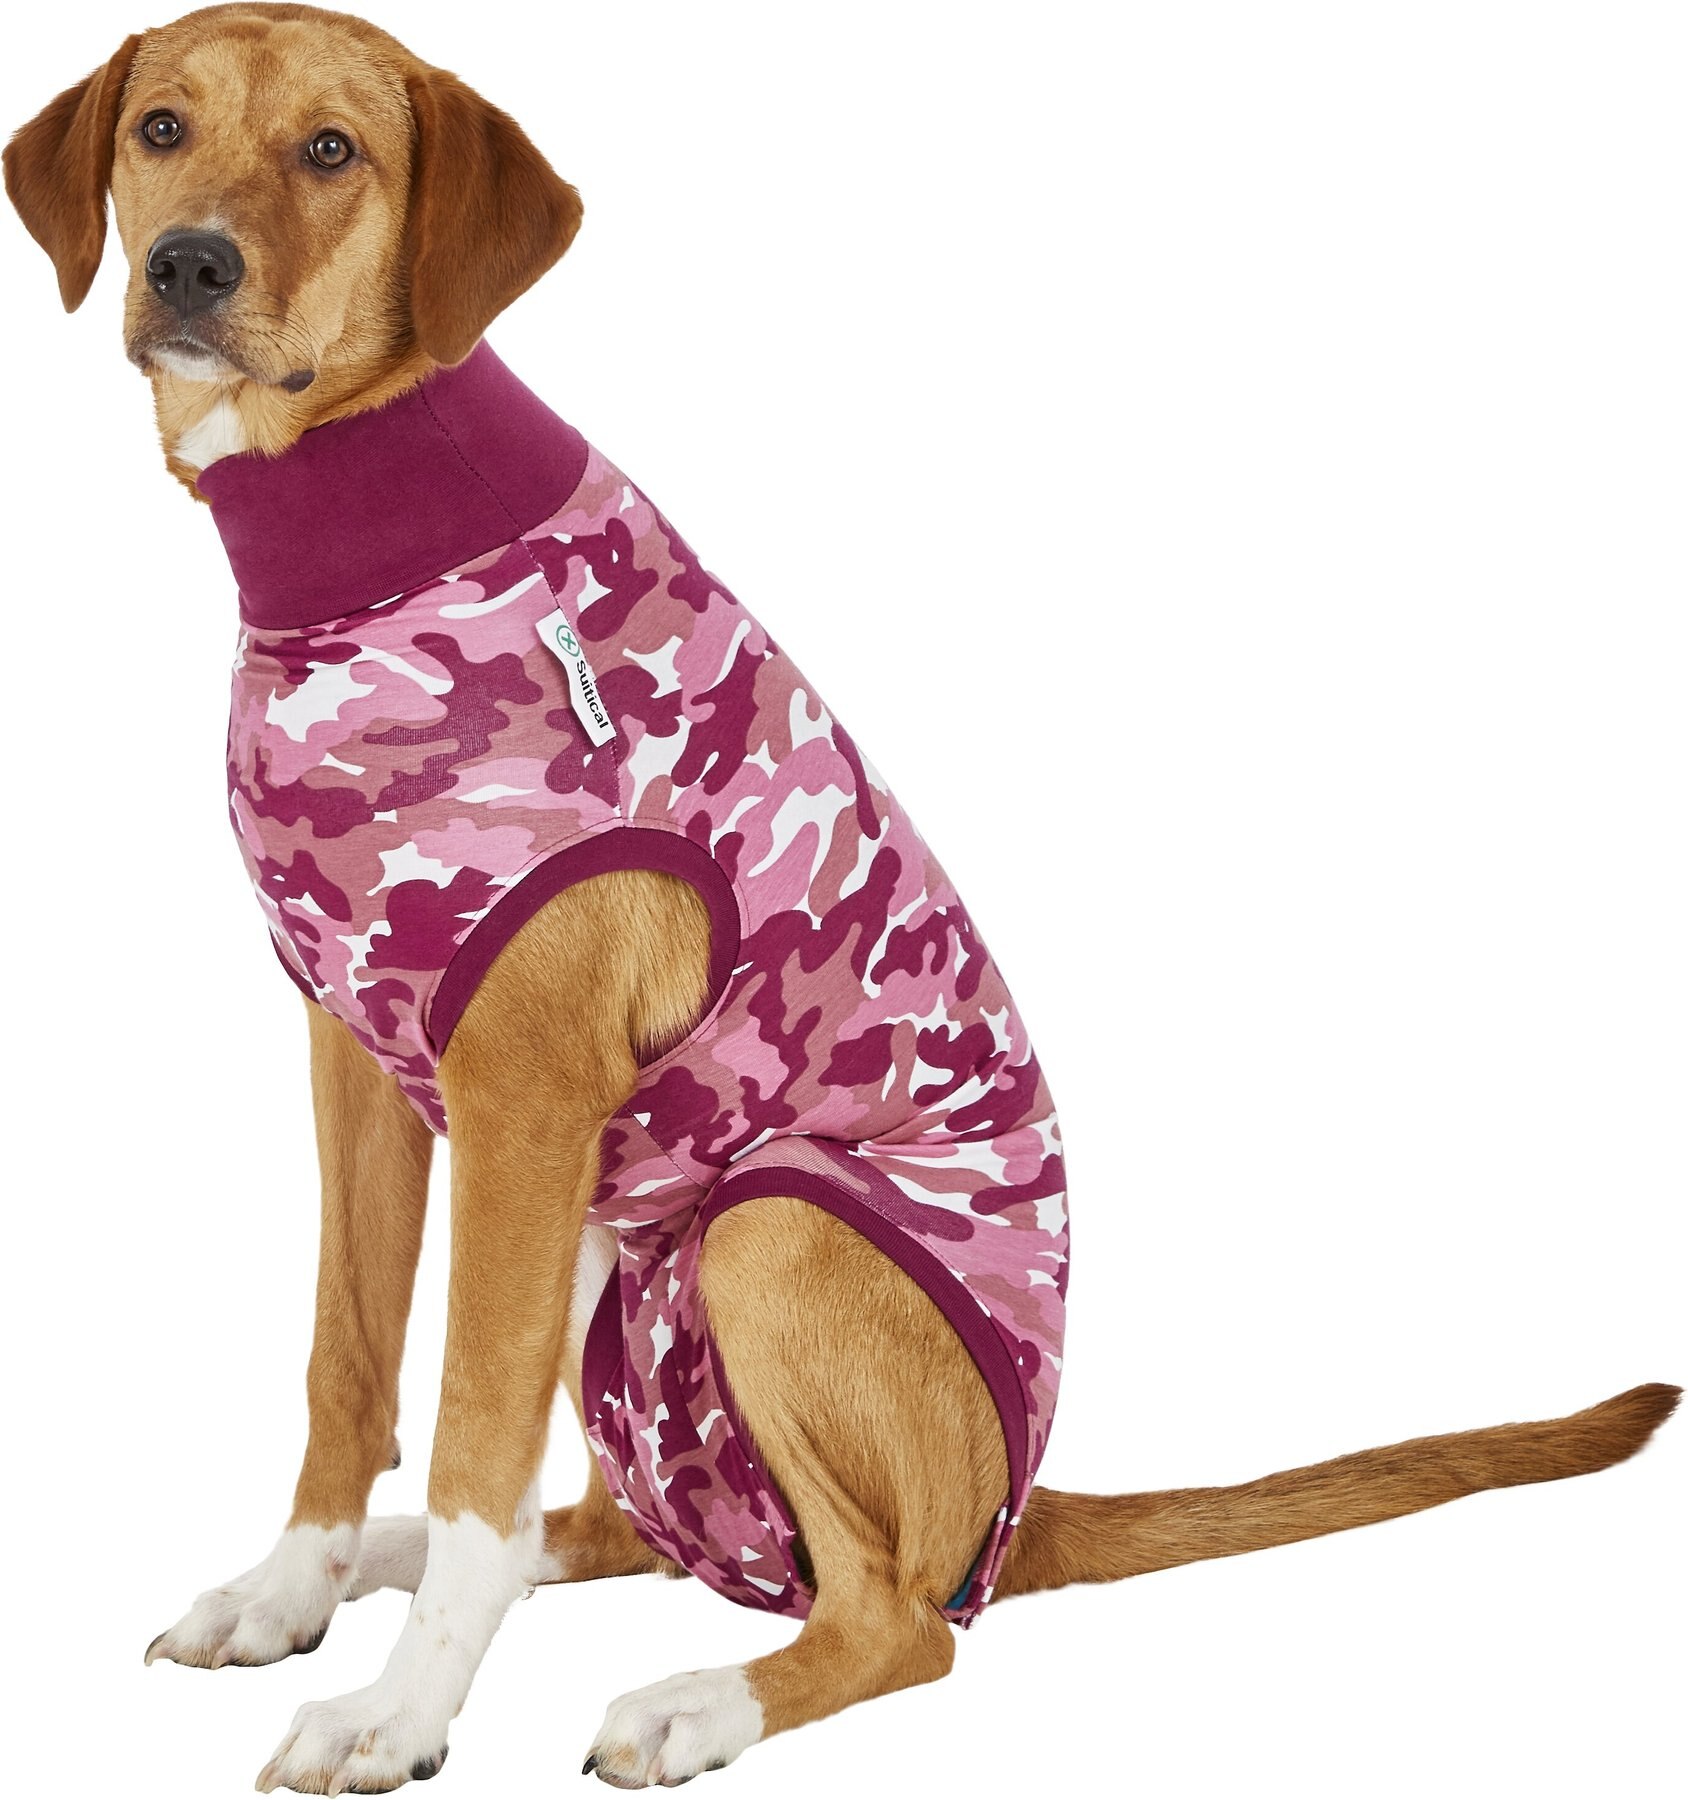 XXXS Lace Trimmed White Dog Turtleneck Shirt clothes pet Clothing Teacup PC Dog® 